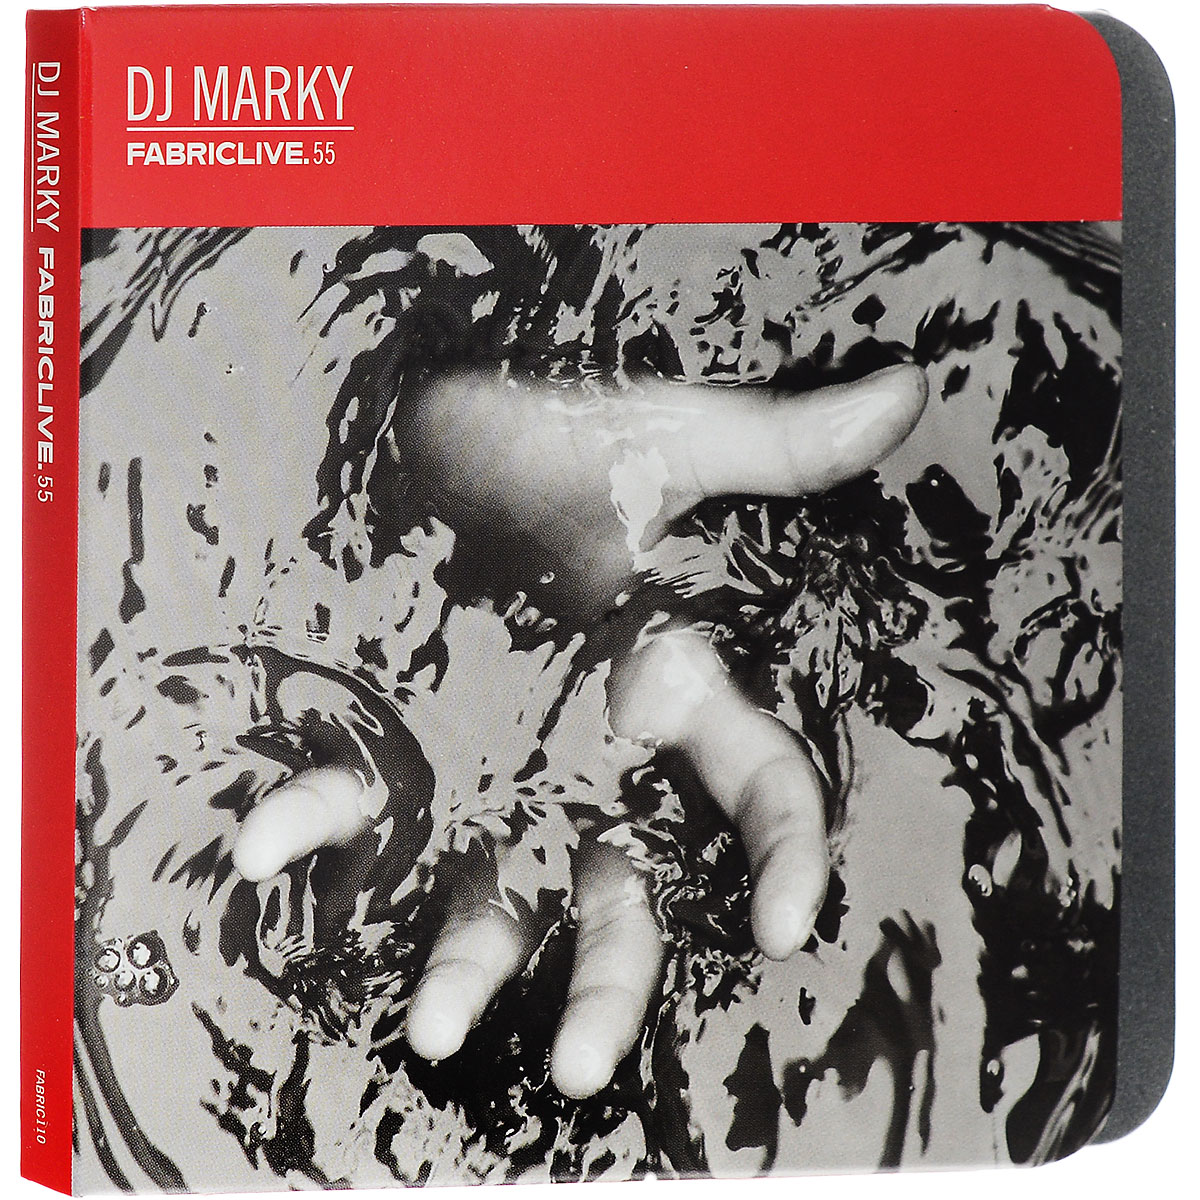 DJ Marky. Fabriclive.55